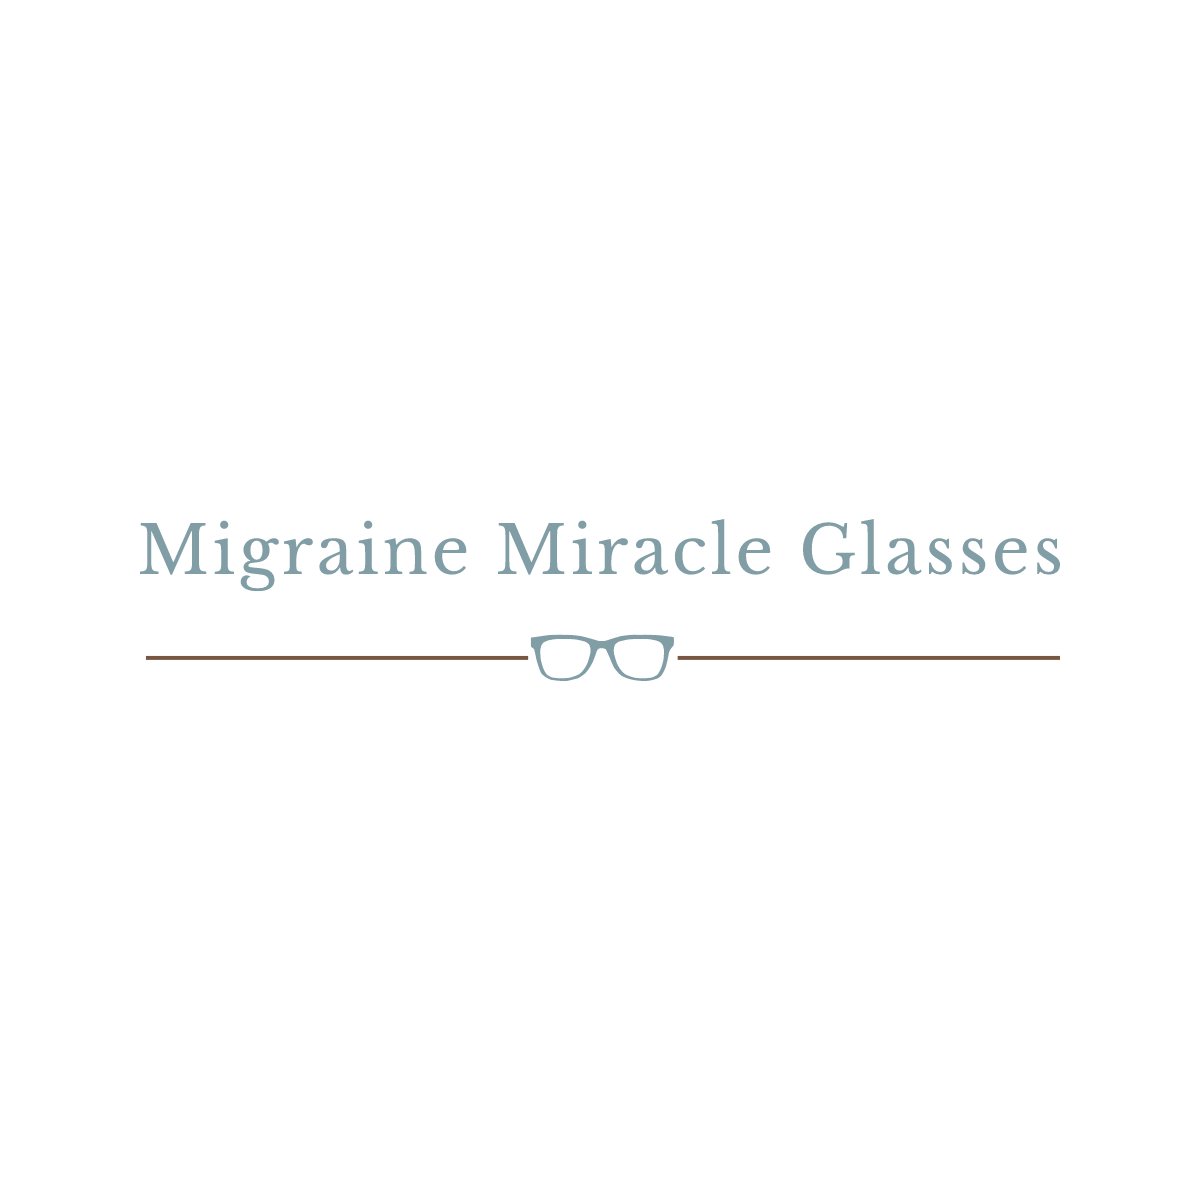 Migraine Miracle Glasses Logo